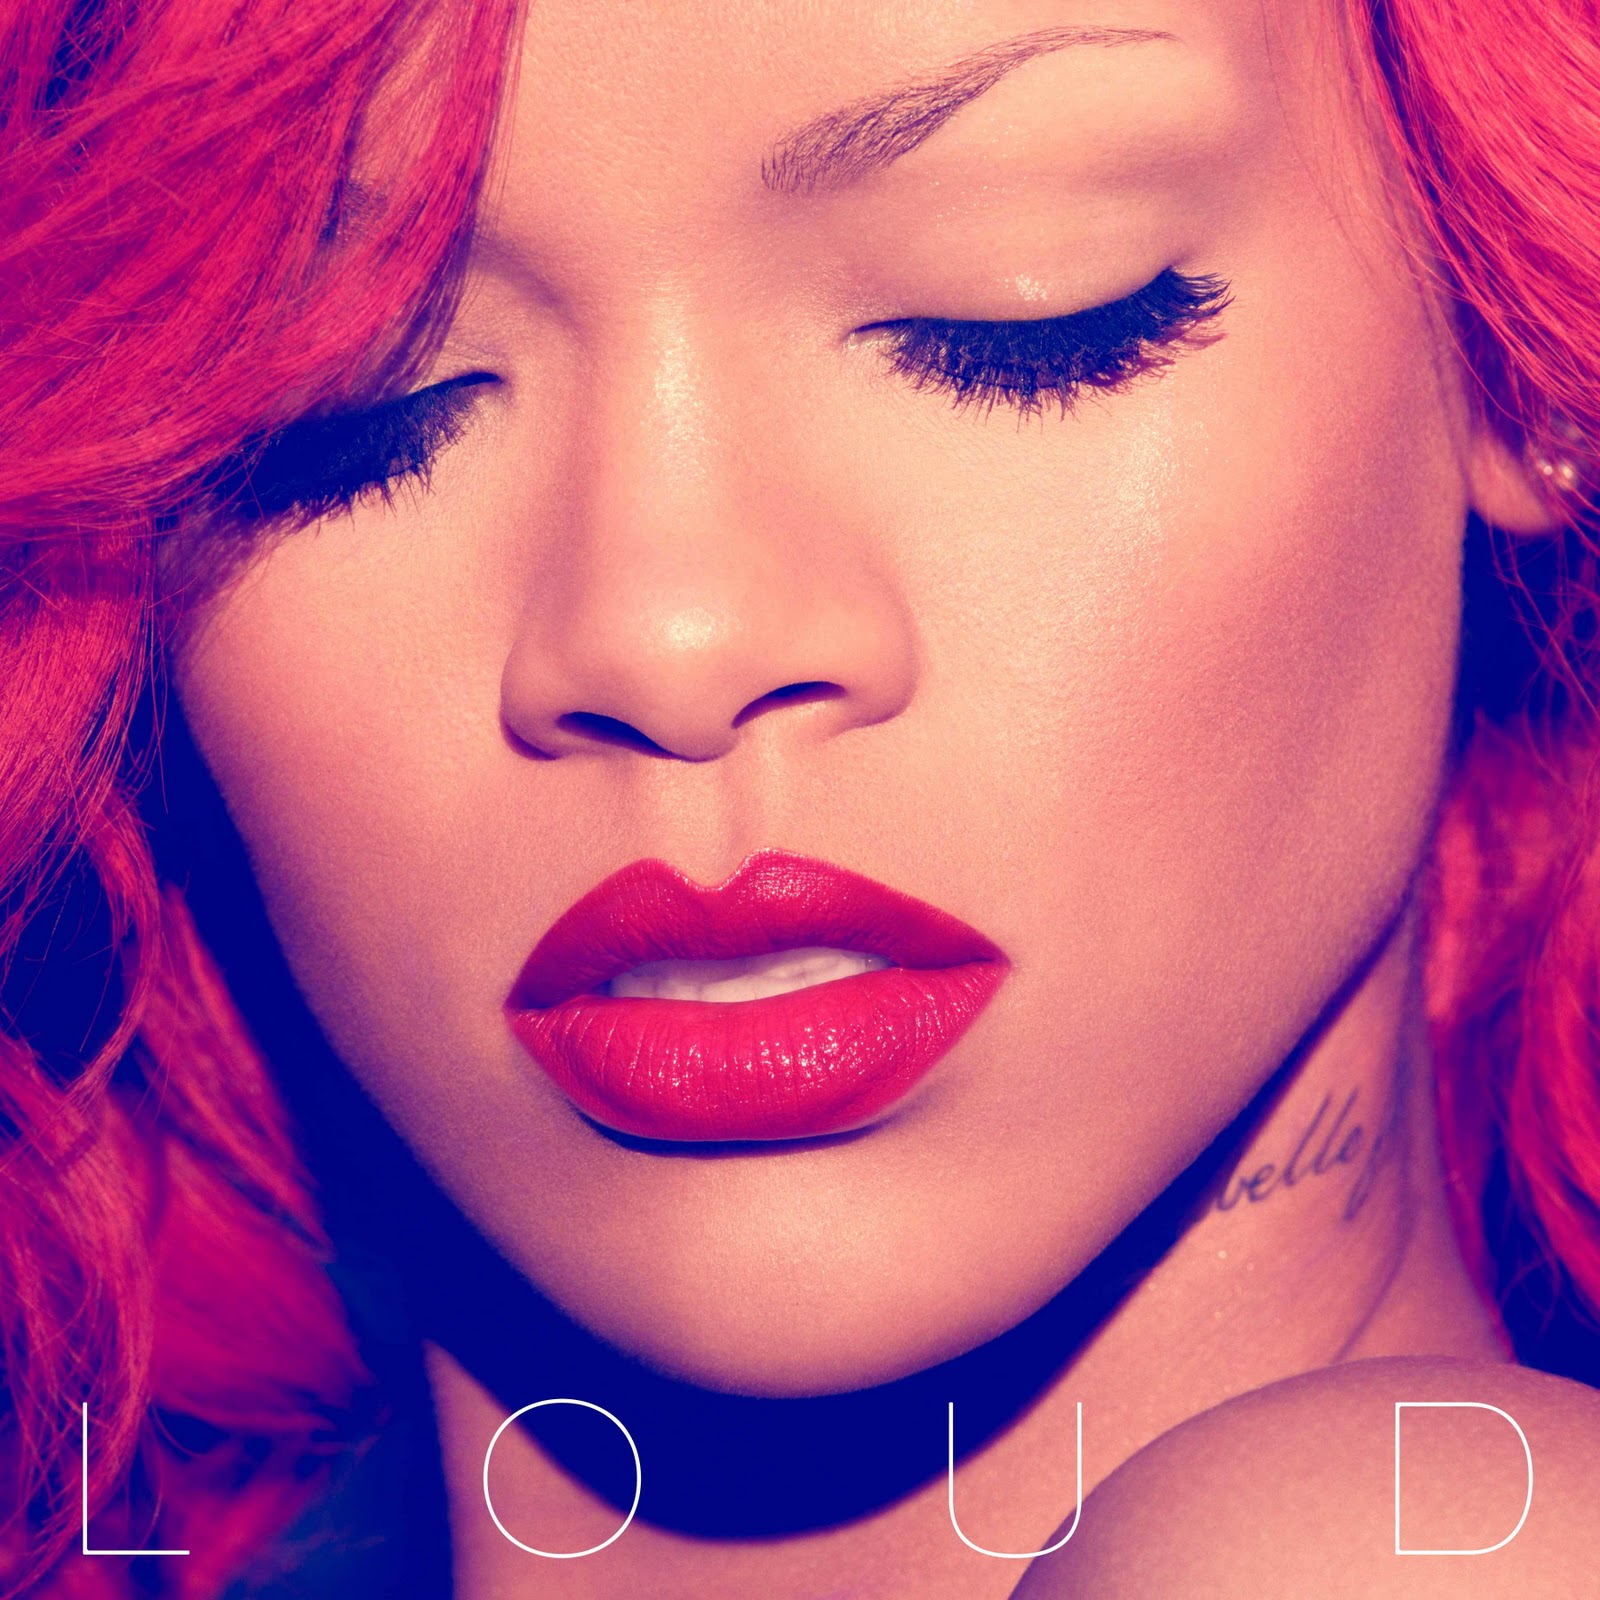 http://4.bp.blogspot.com/_mupIVJbjvuU/TKLnYvpNTNI/AAAAAAAAHU0/nhcSiMrrkBk/s1600/Rihanna+-+Loud+(Official+Album+Cover).jpg